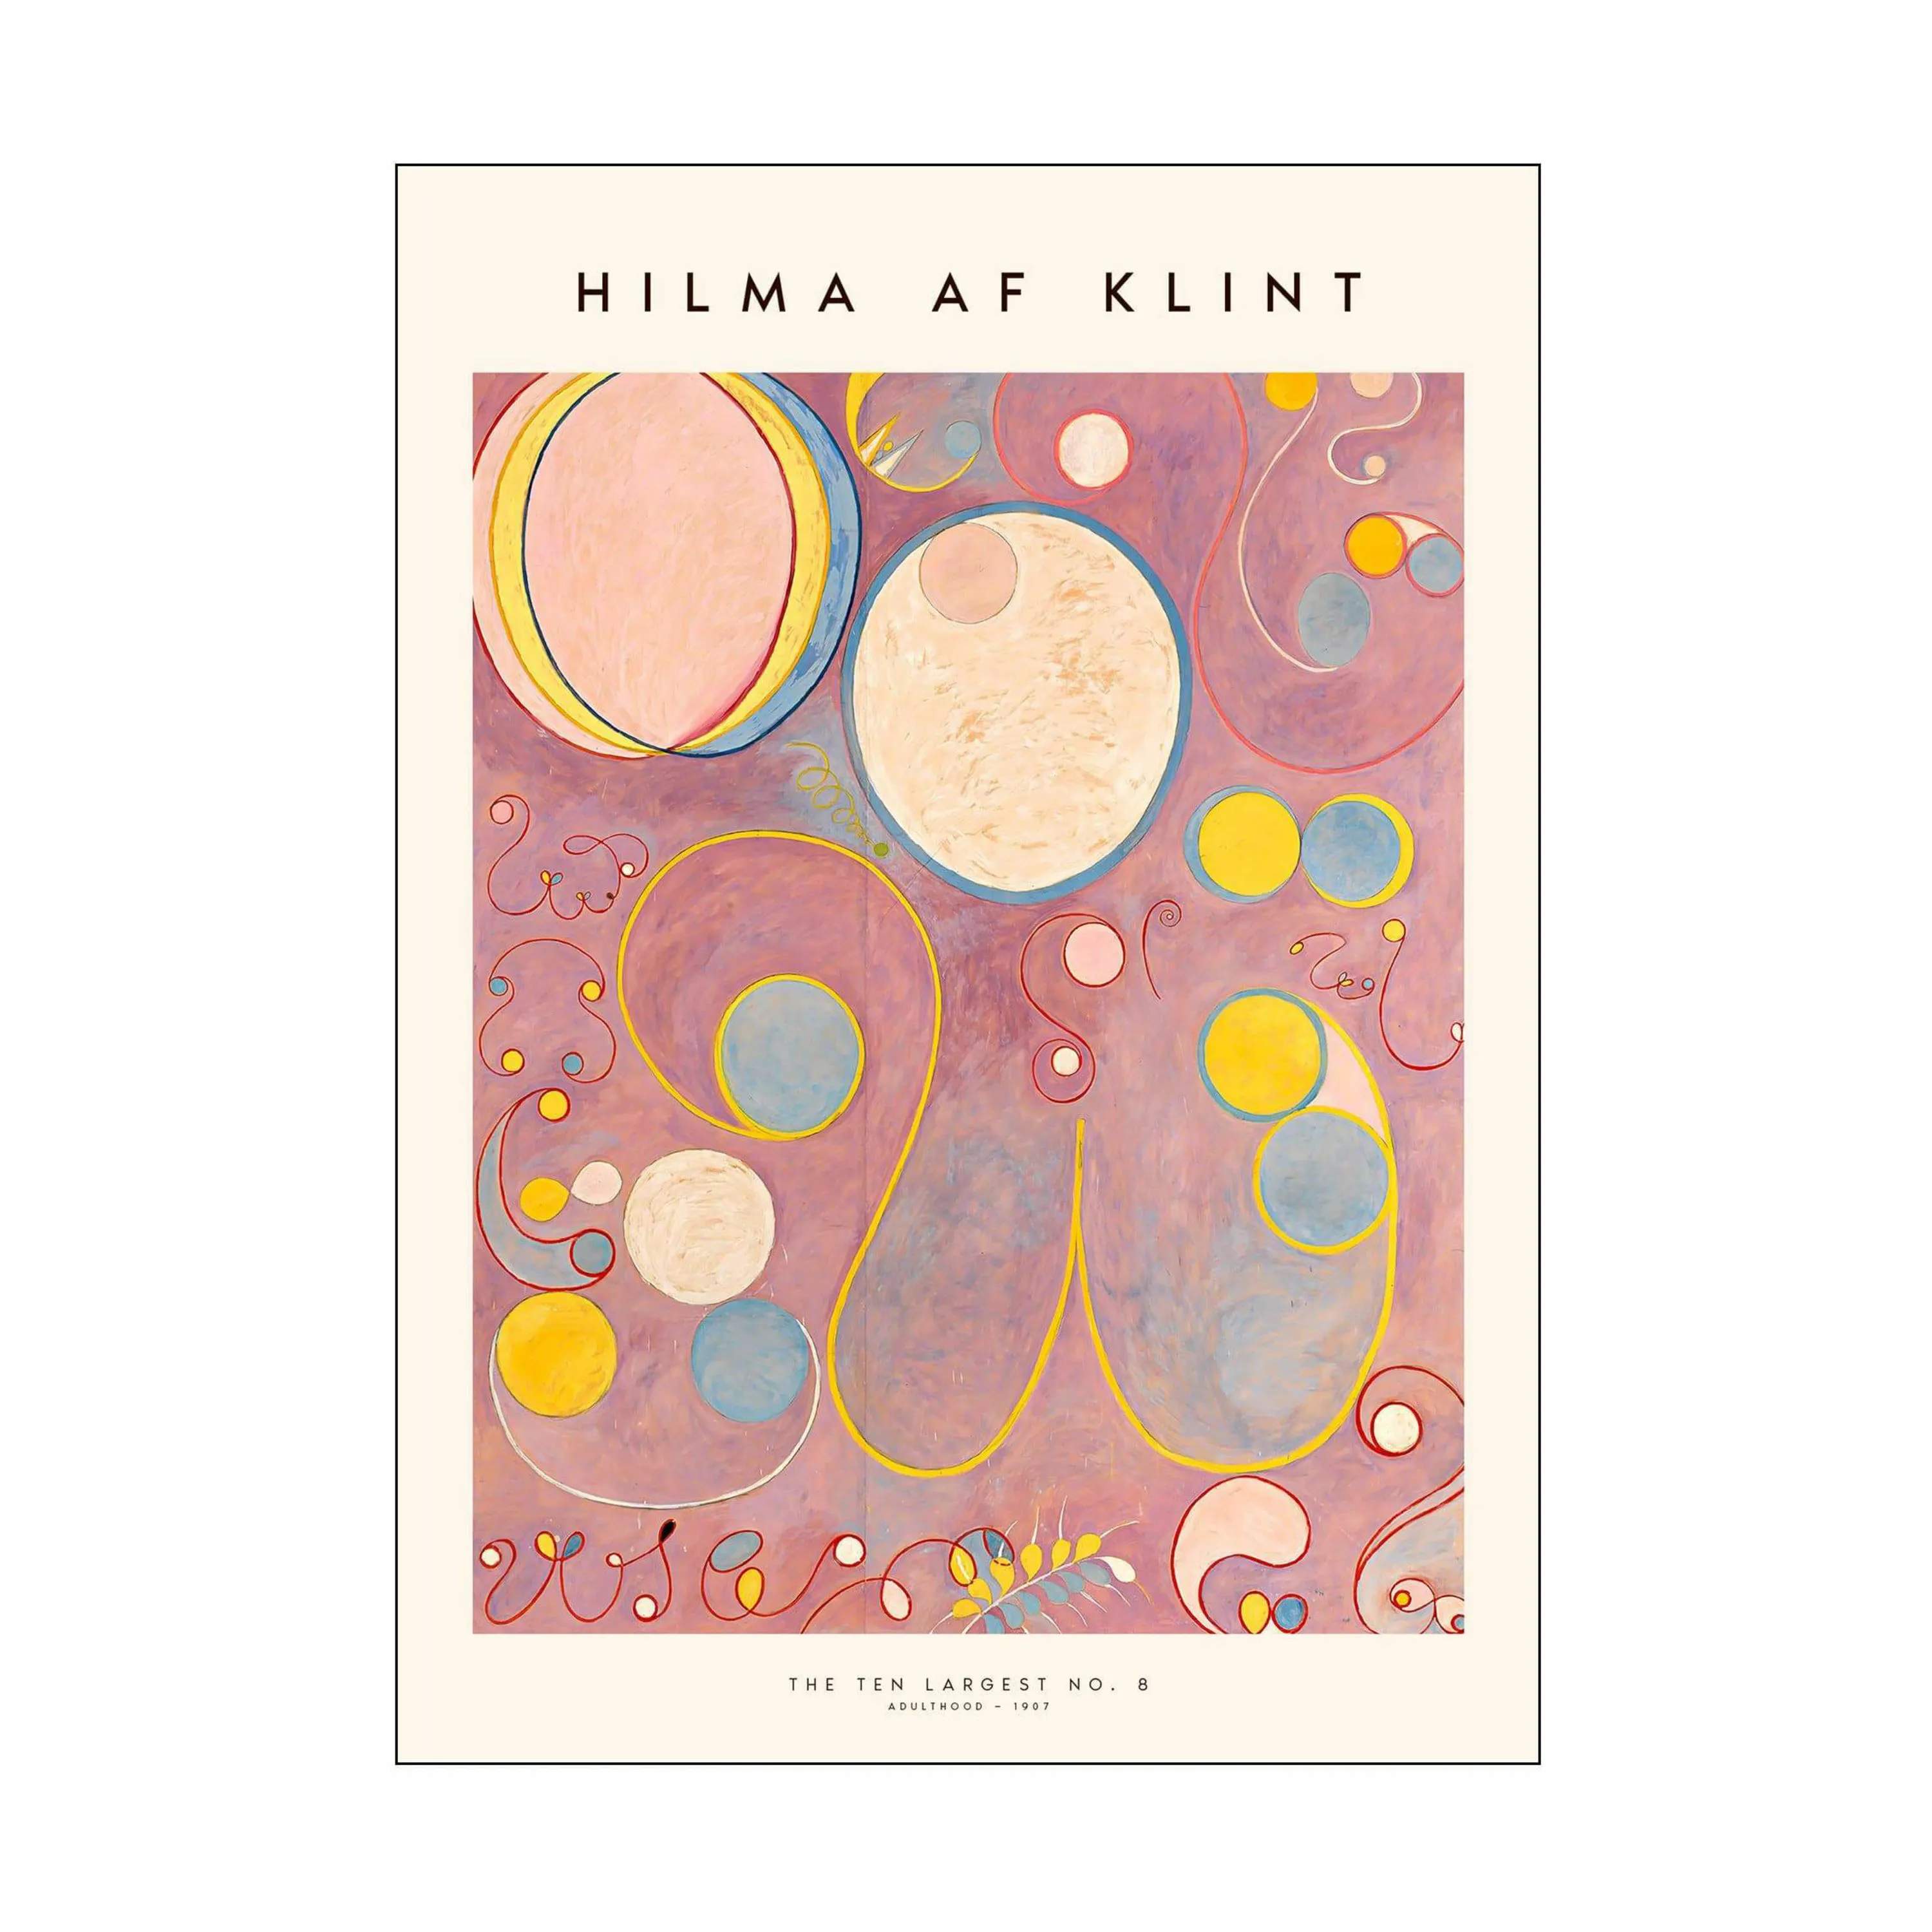 Hilma af Klint Plakat - The ten largest no. 08, rosa, large